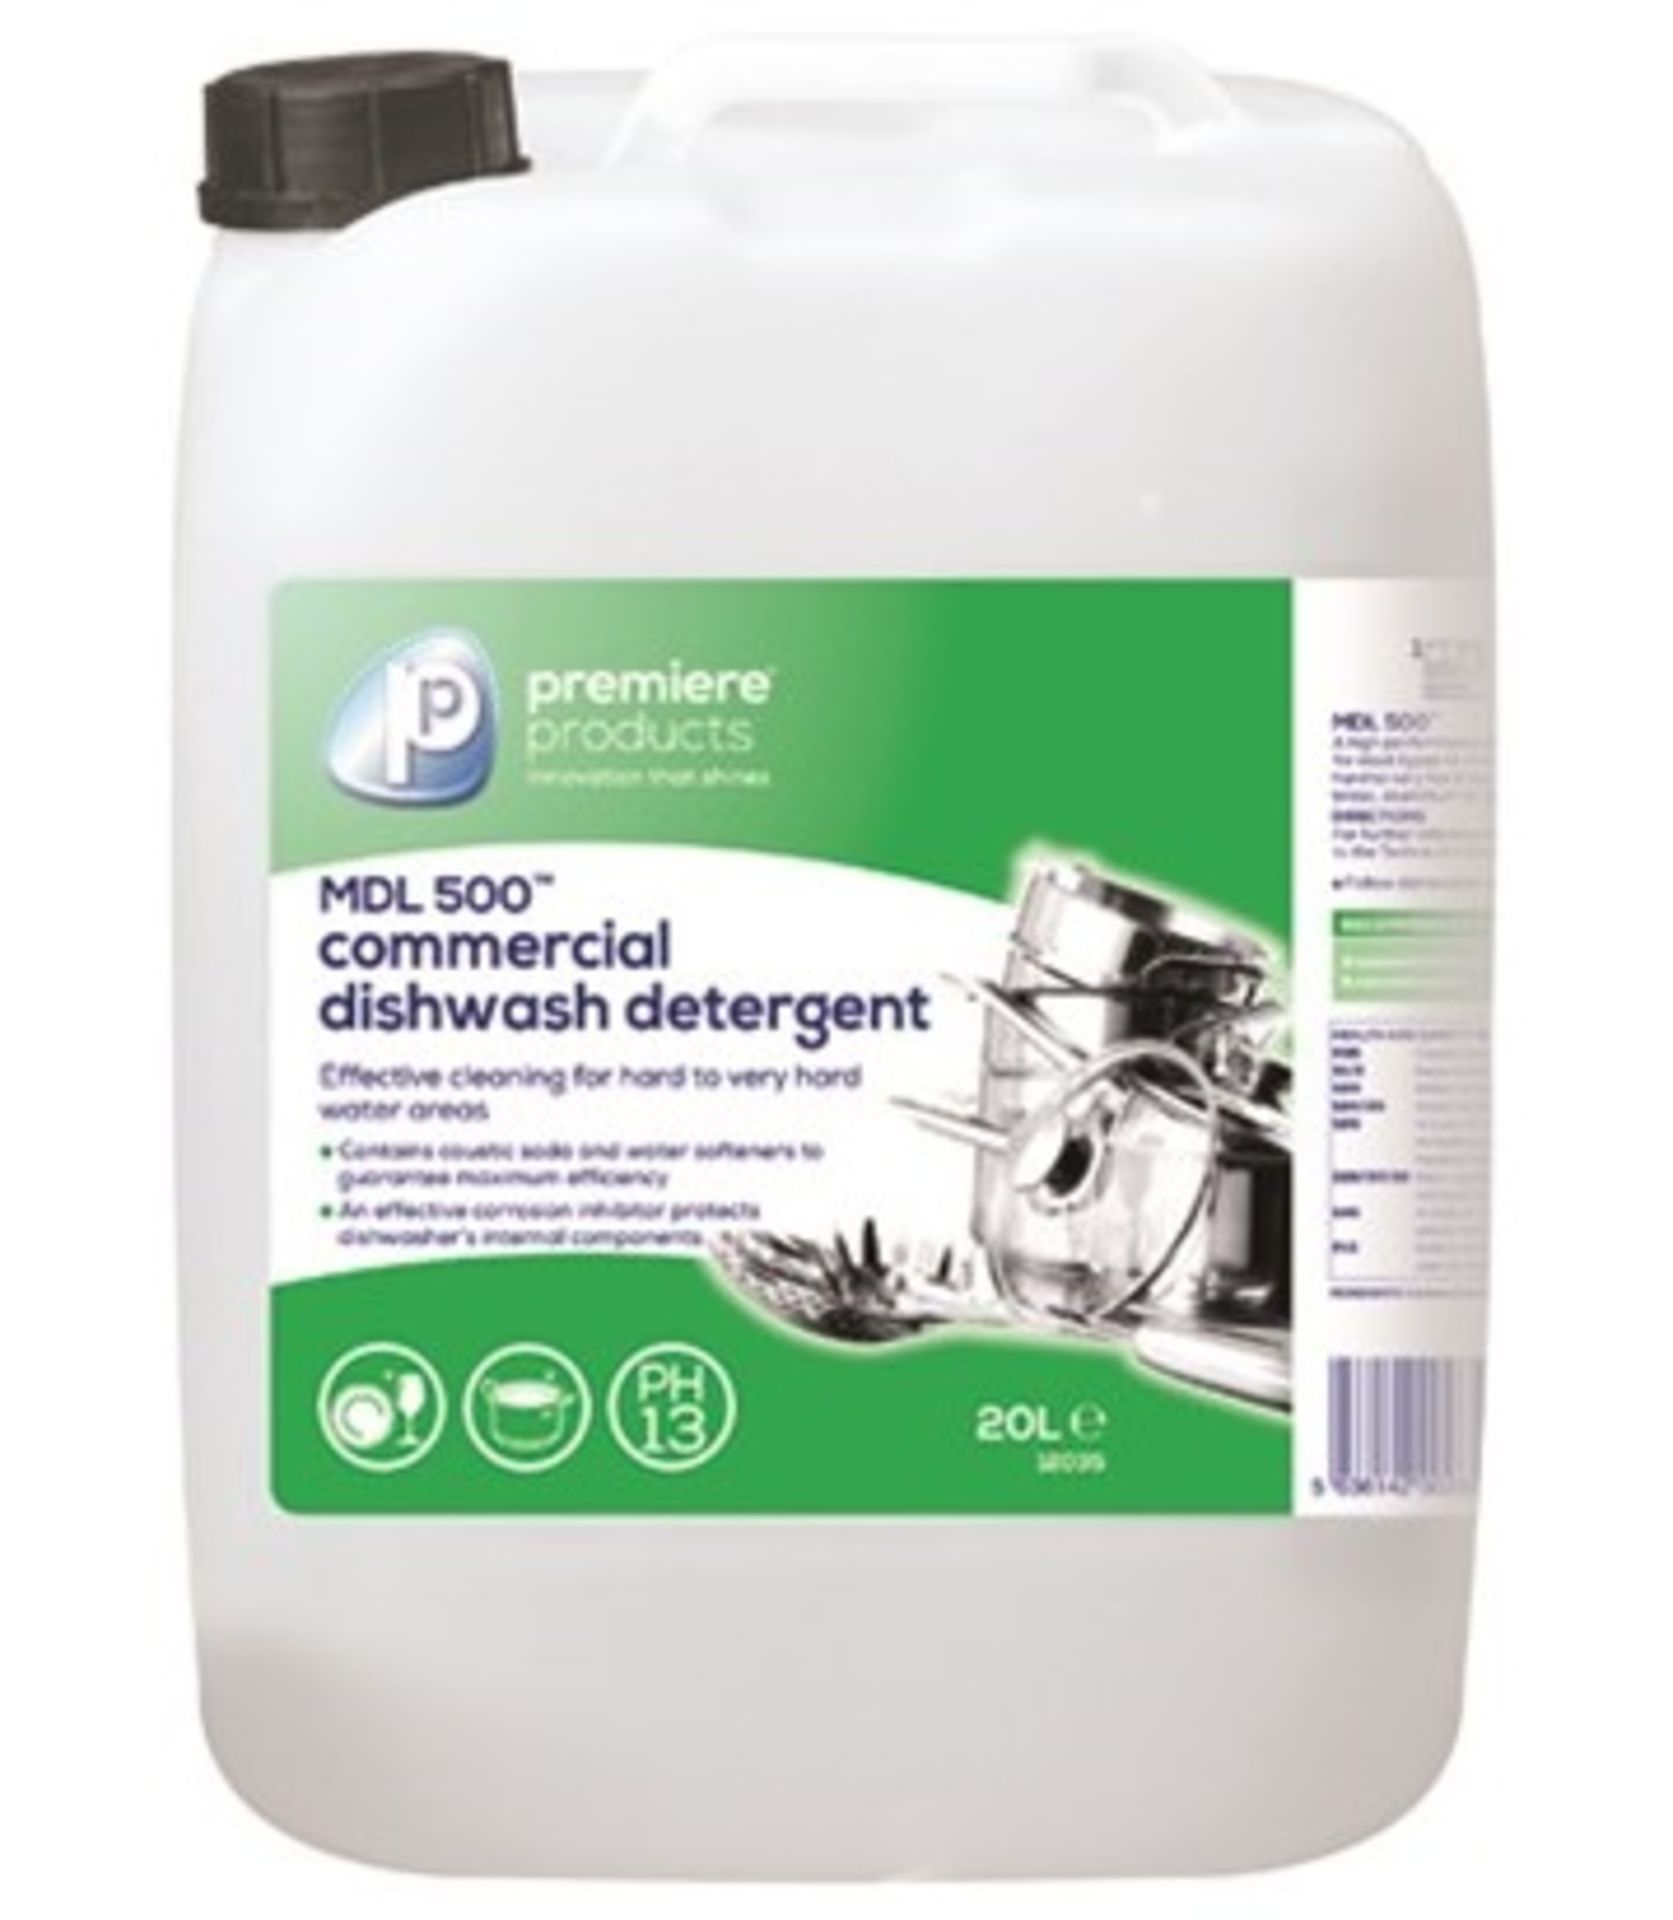 1 x Premiere 20 Litre MDL 500 Commercial Dishwash Detergent - Premiere Products - Includes 1 x 20 Li